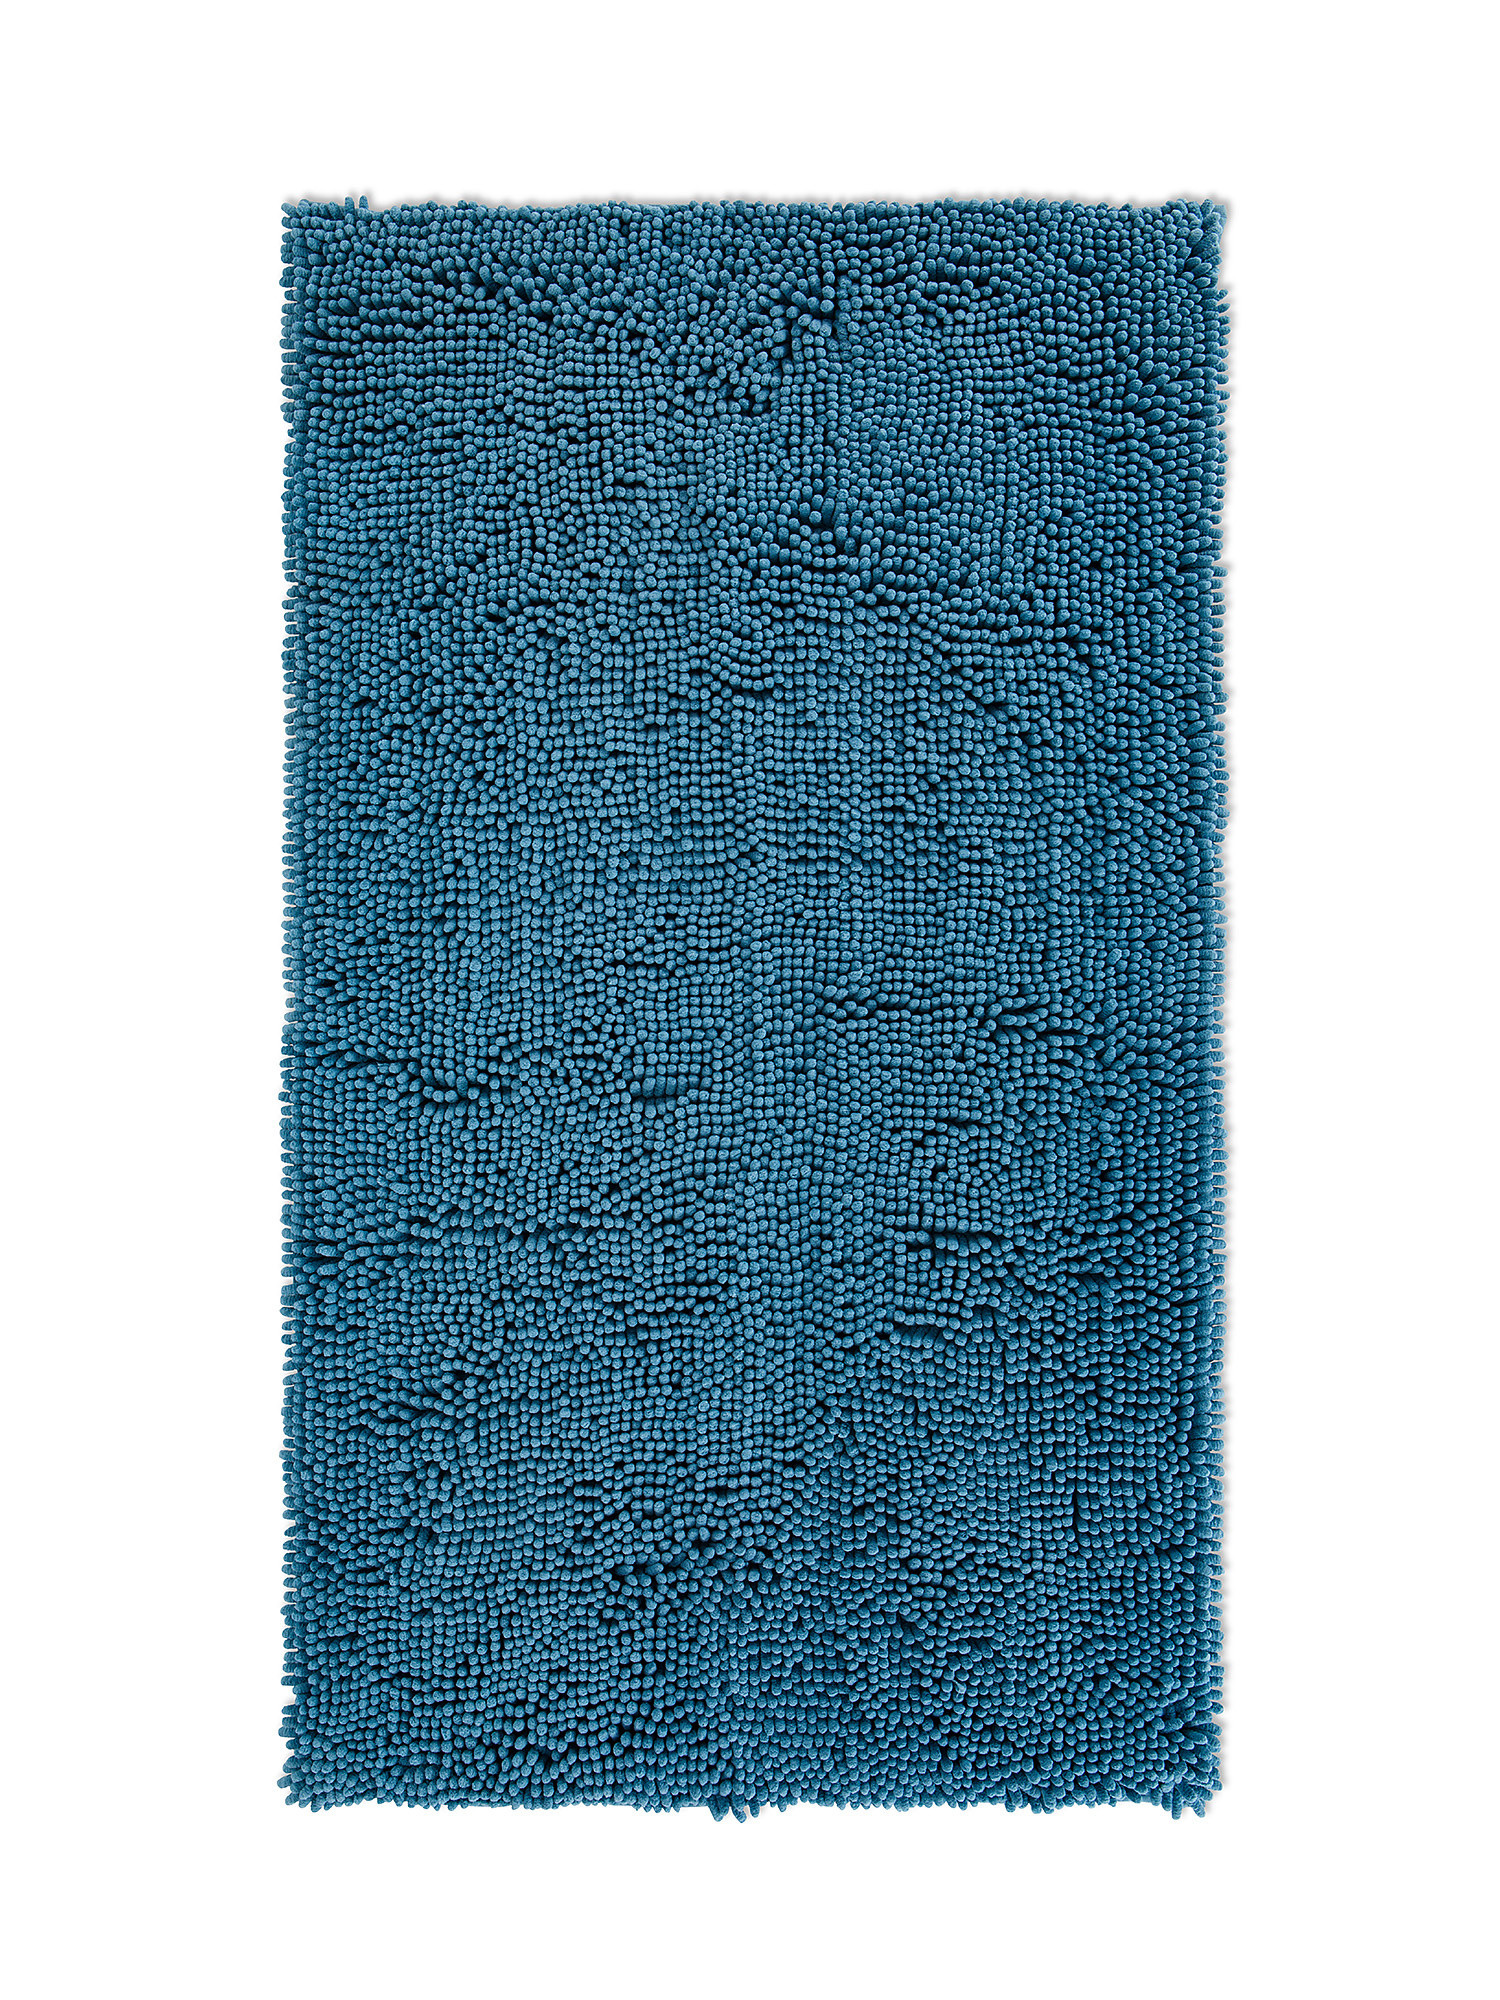 Zefiro Gold shaggy micro fleece bath mat, Aviation Blue, large image number 0